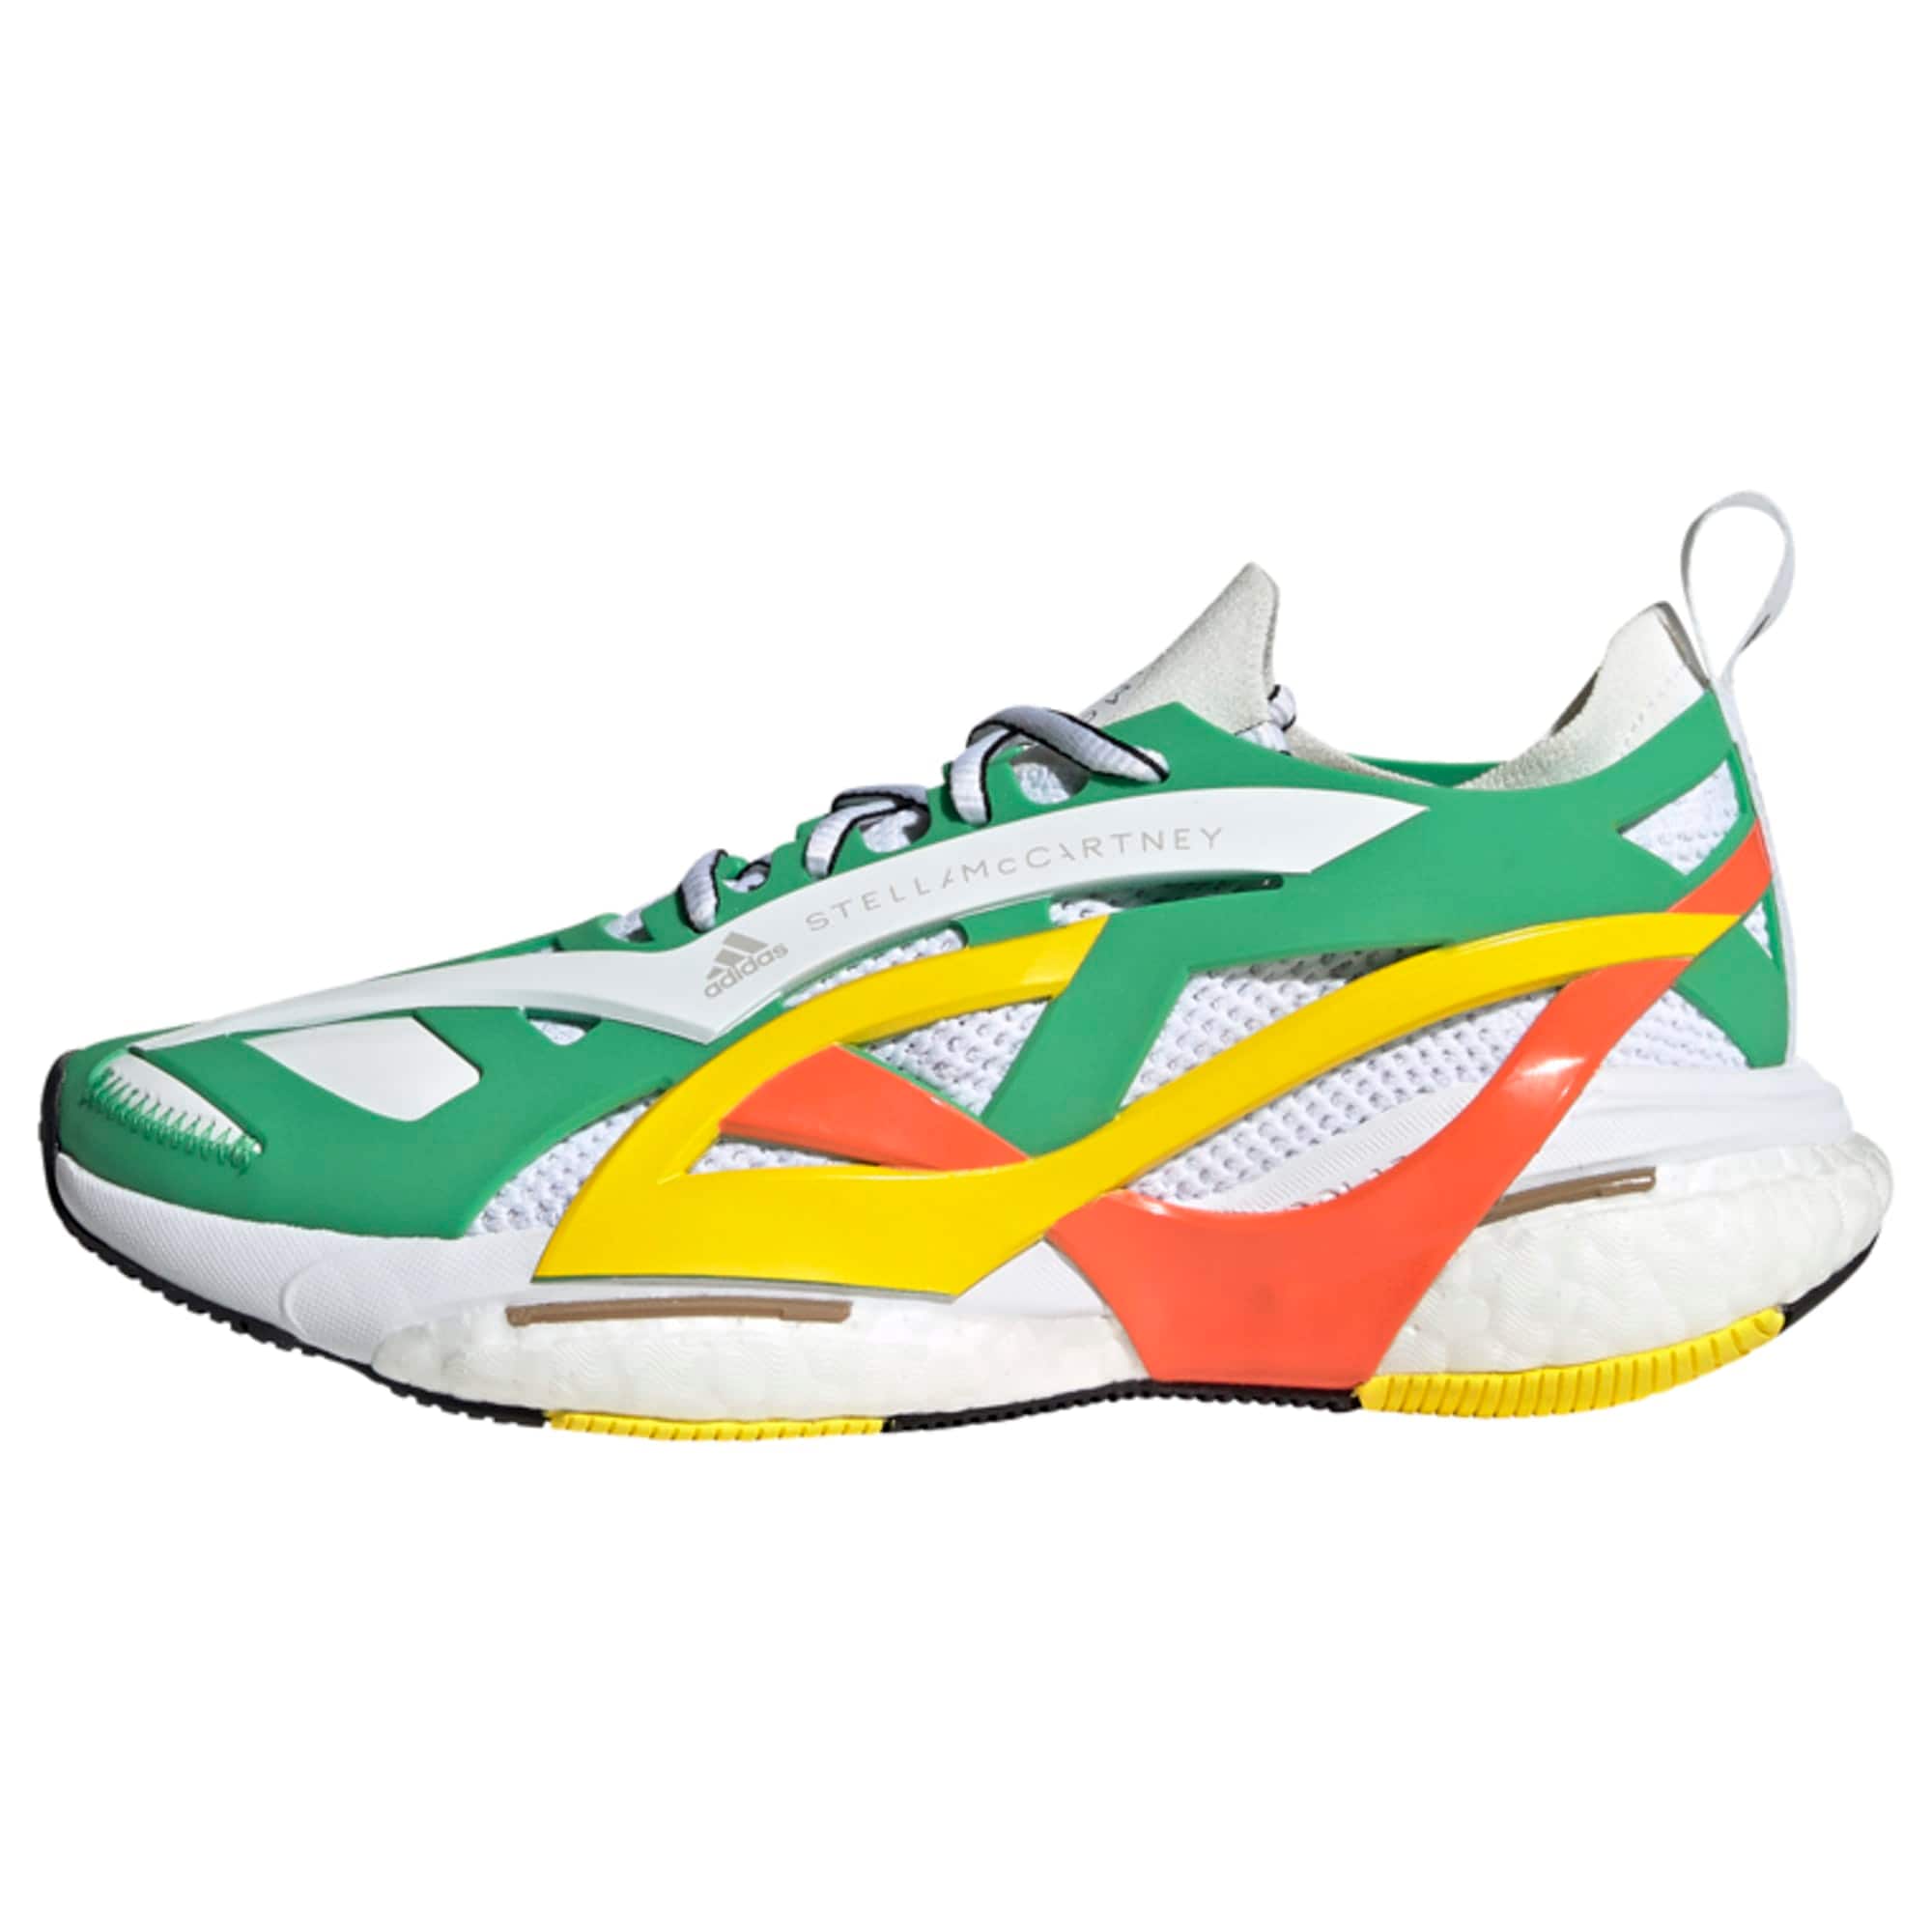 ADIDAS BY STELLA MCCARTNEY Bėgimo batai 'SolarGlide' geltona / žalia / tamsiai oranžinė / balta